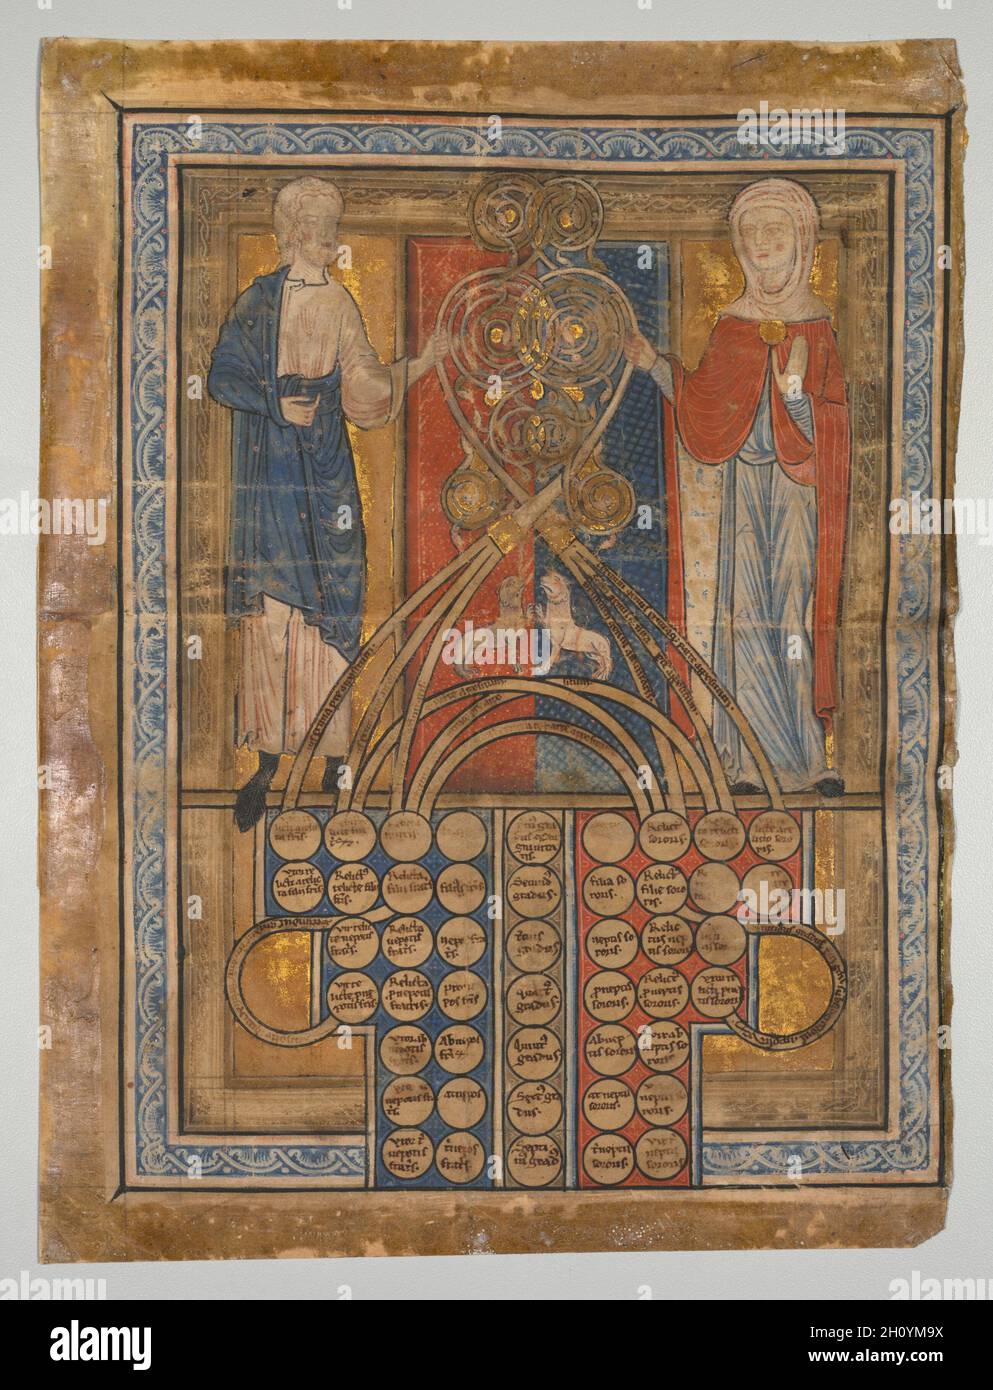 Hoja única: Tabla de consanguinidad, c. 1200. Inglaterra, finales de  12th-principios del siglo 13th. Tinta, tempera y oro sobre vitela; hoja:  28,9 x 21,8 cm (11 3/8 x 8 9/16 pulg.). Los